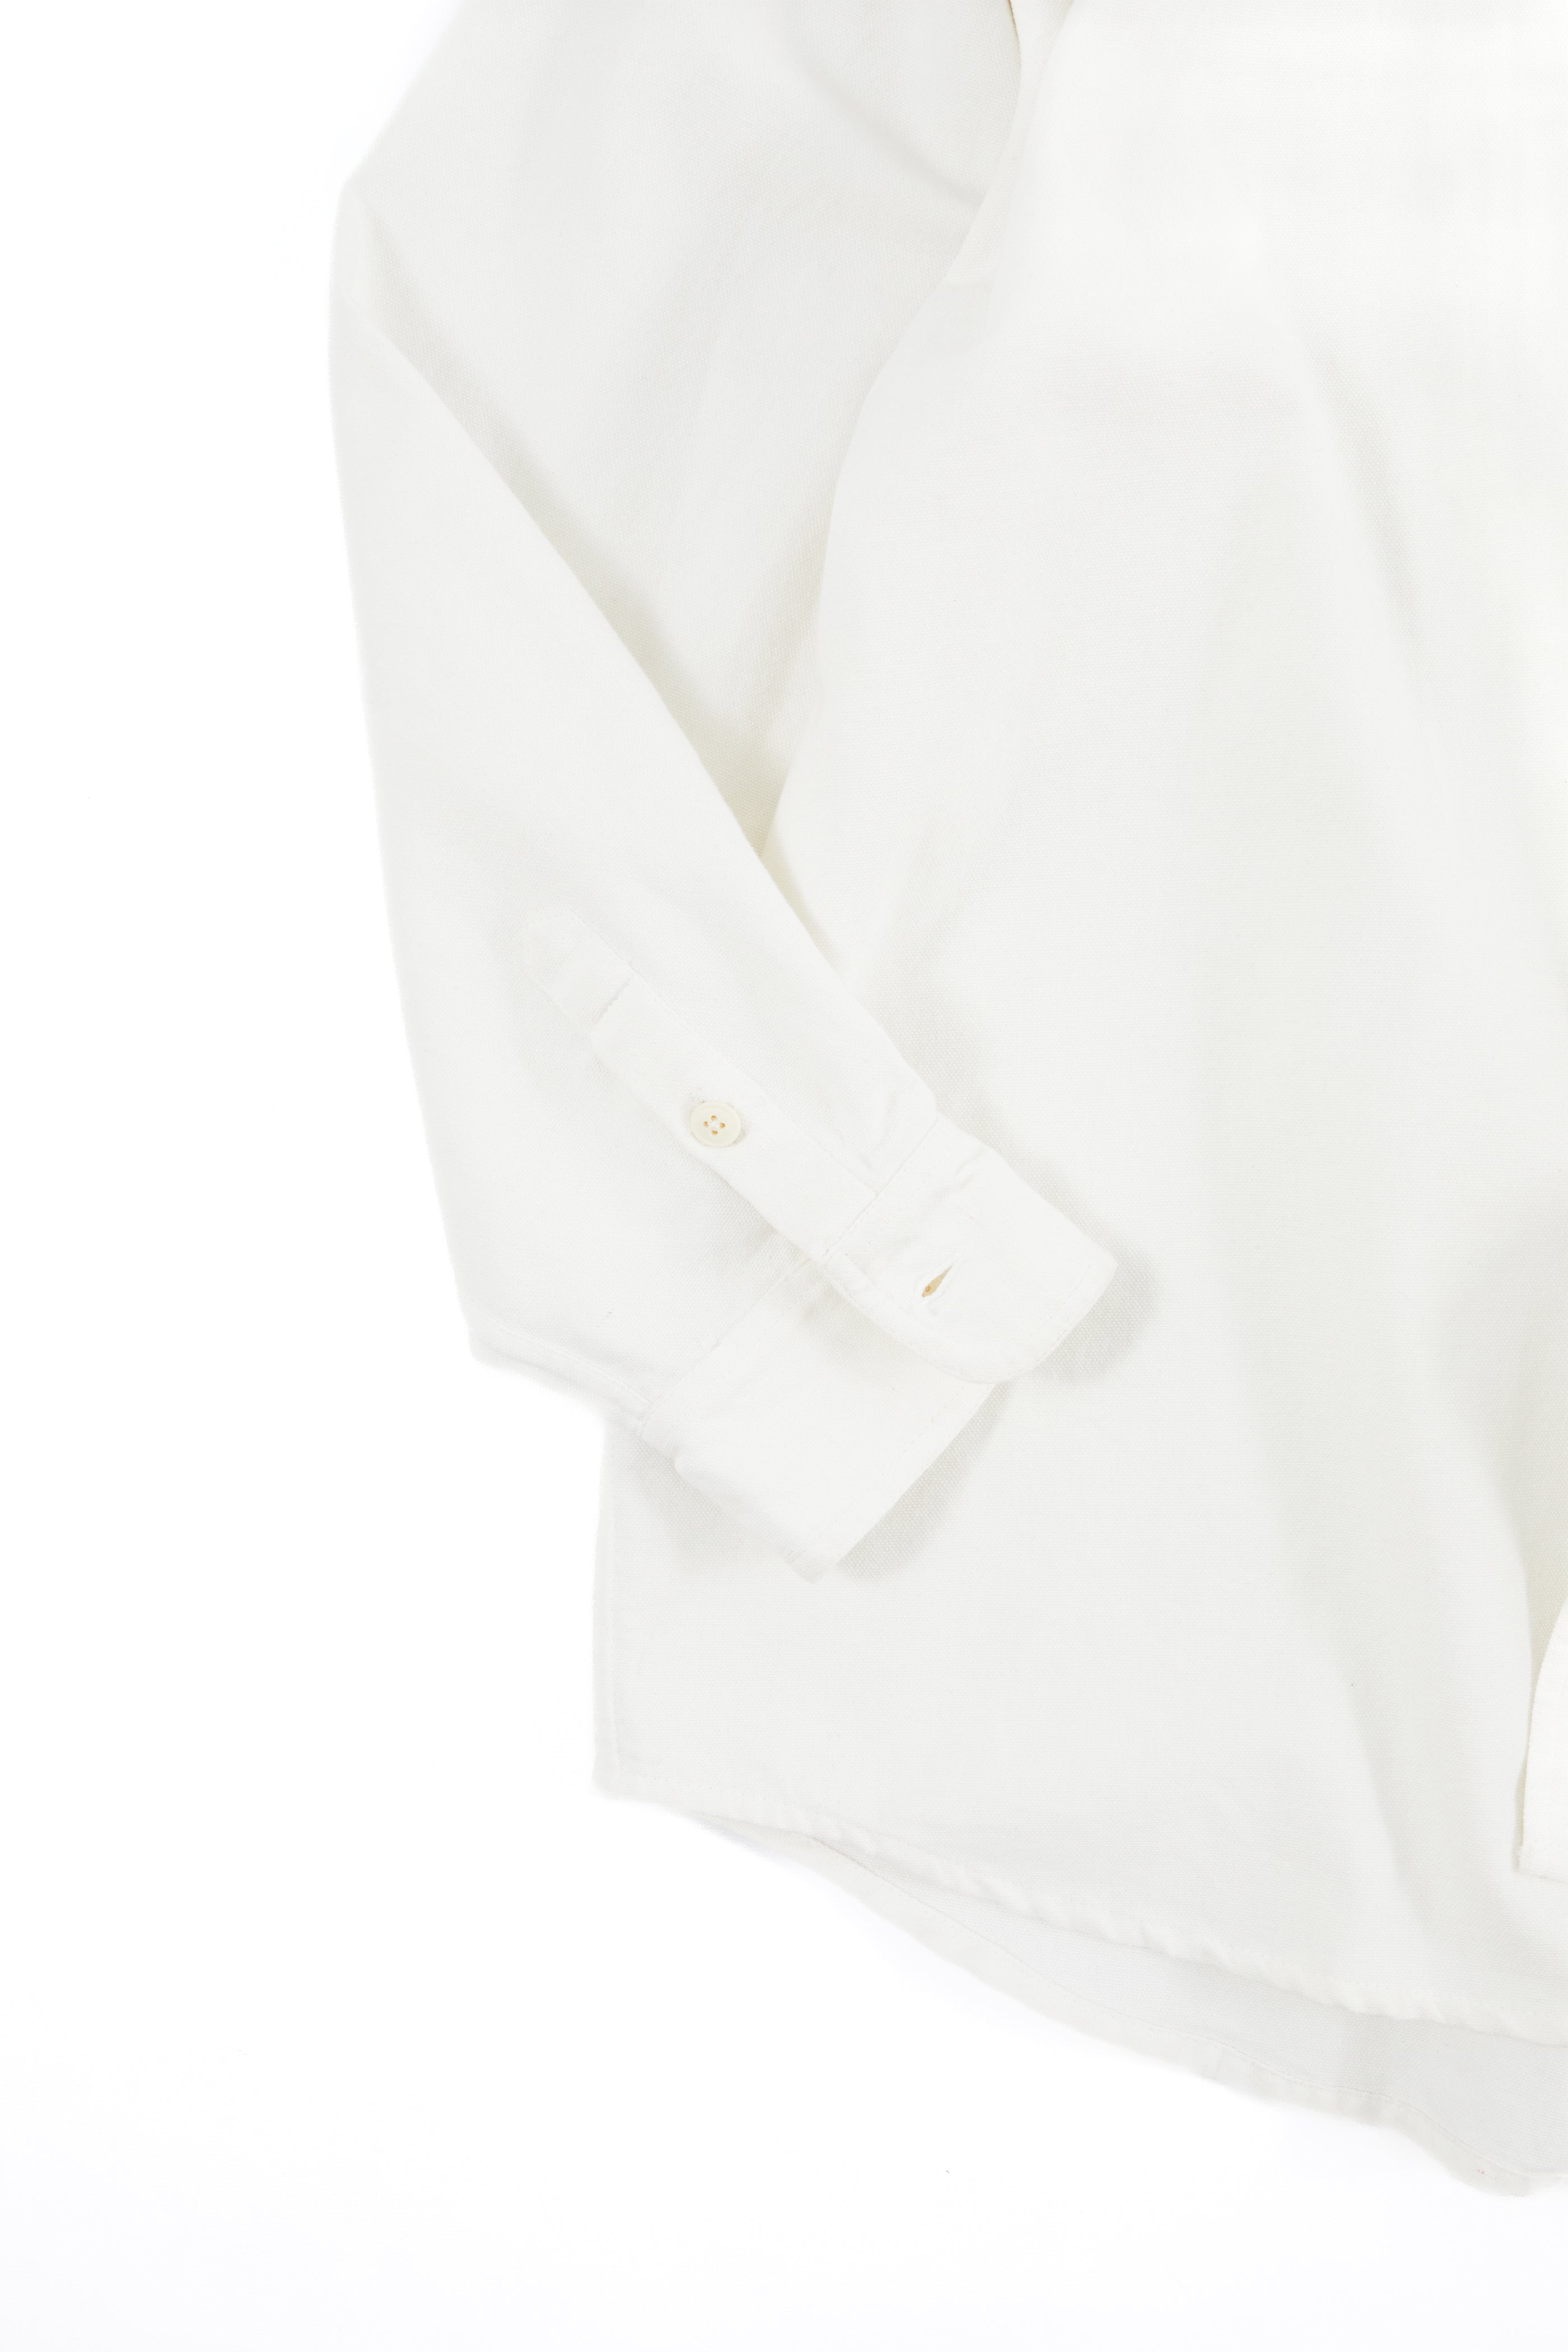 WOLF BUTTON-DOWN SHIRT - WHITE OXFORD CLOTH